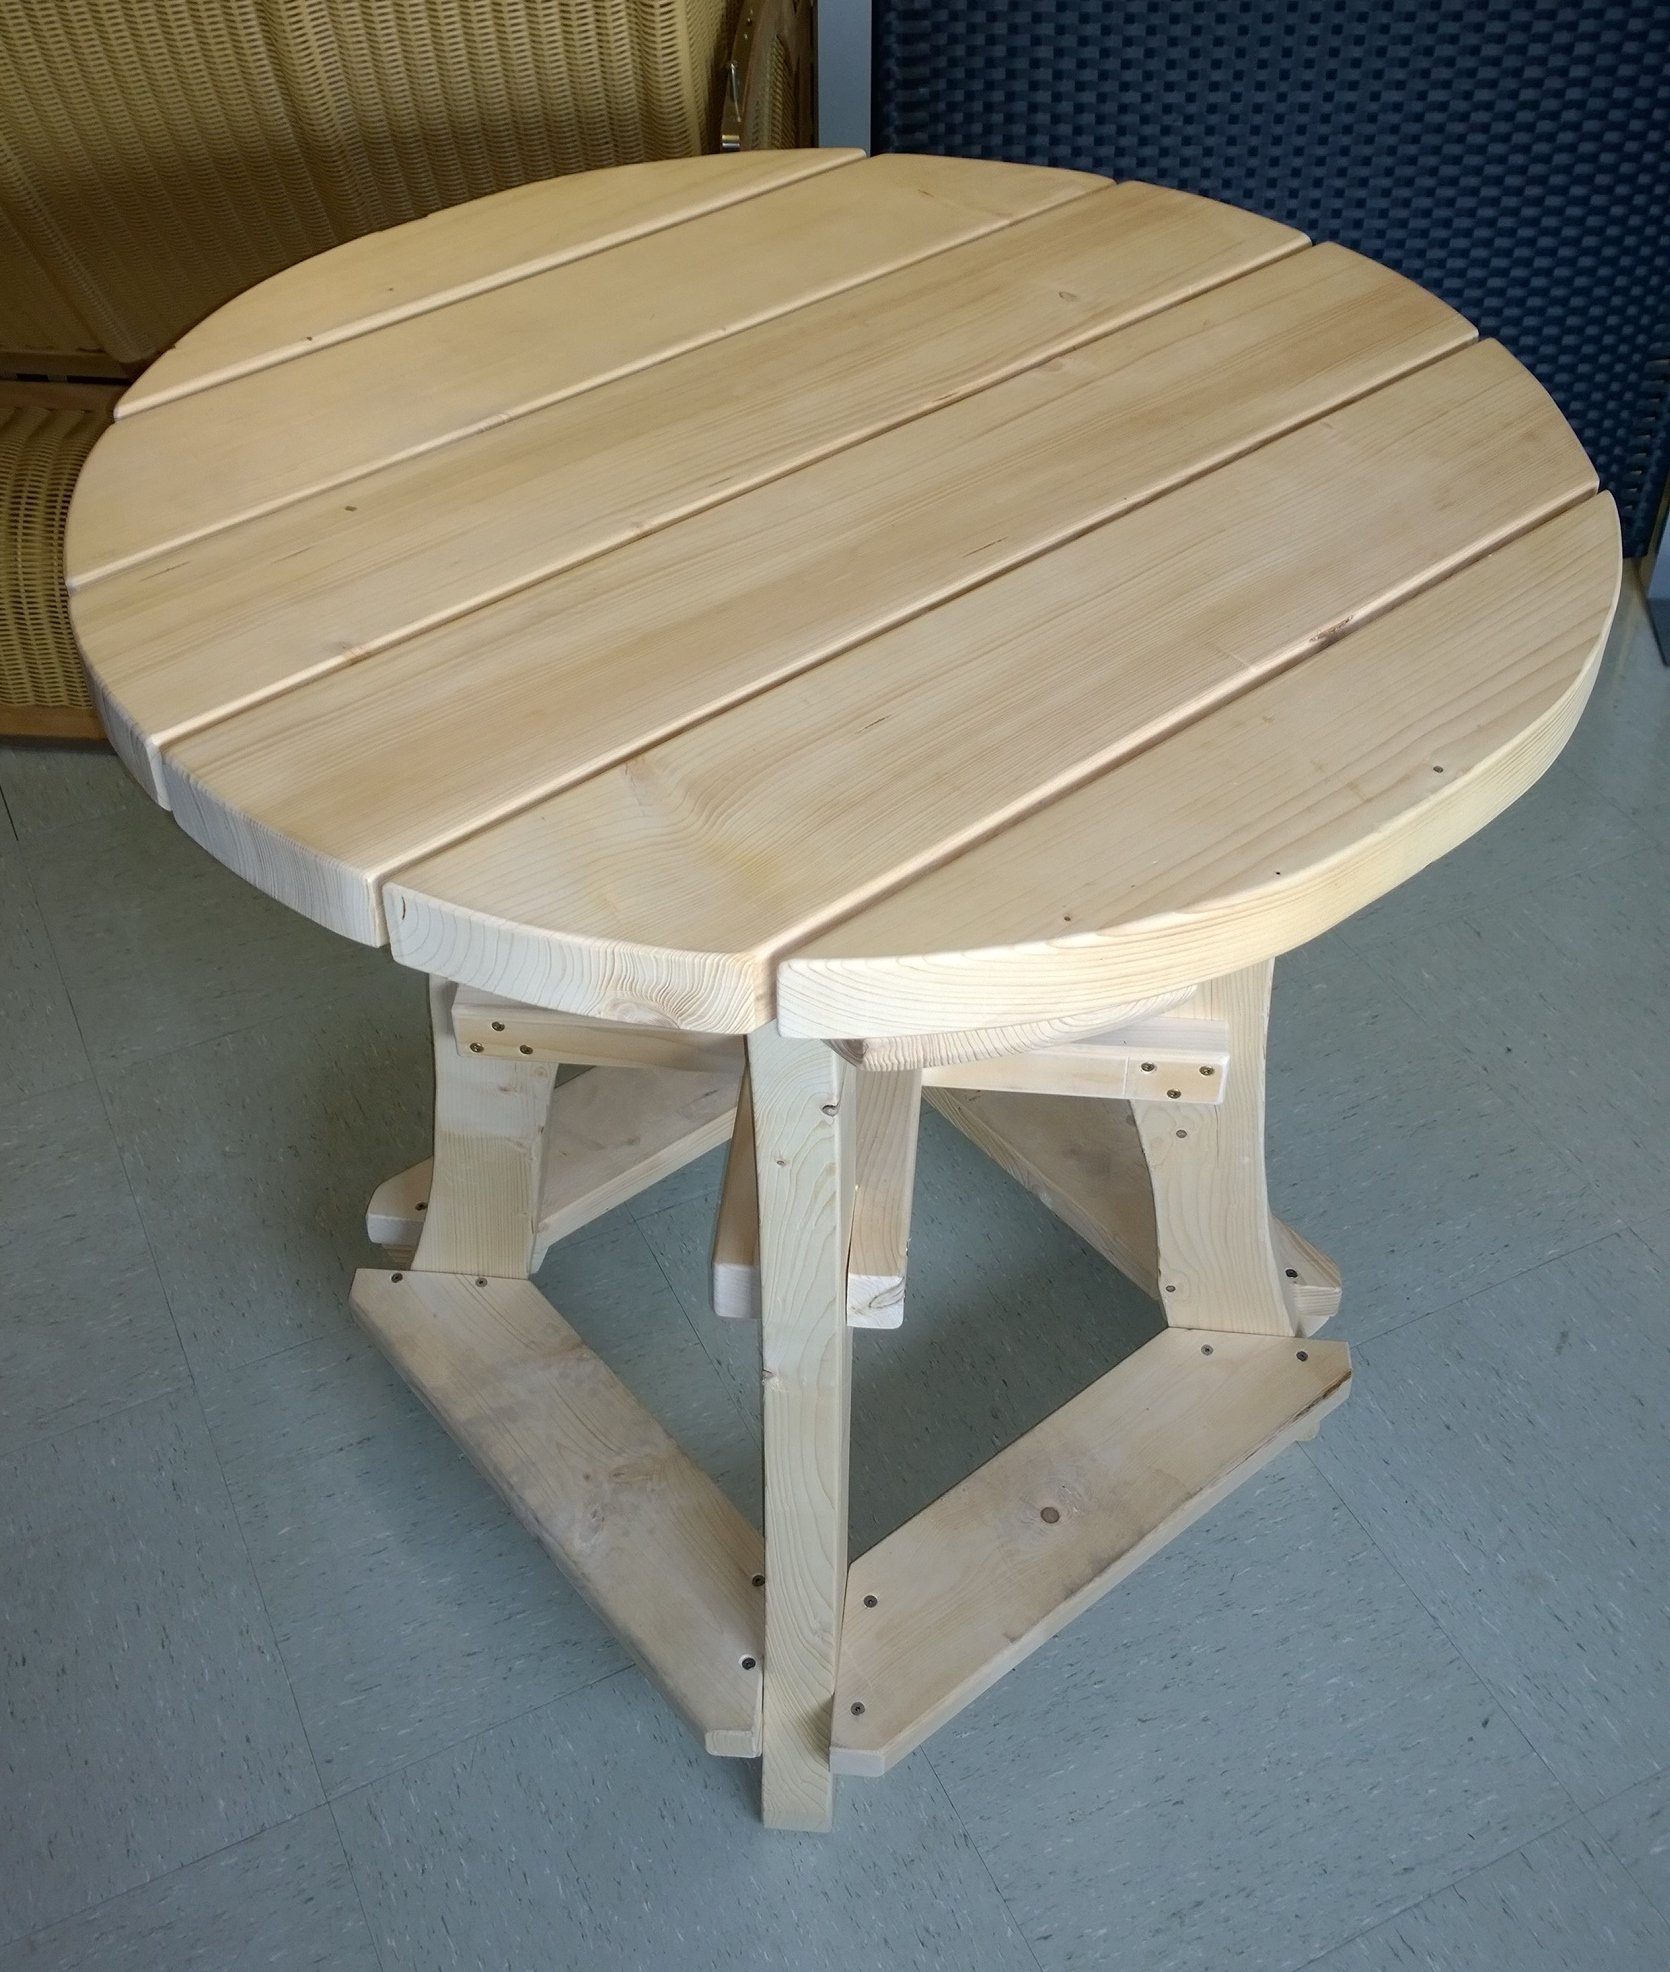 SAUERLAND Partytisch, DER stabile Stehtisch aus Fichtenholz natur, Ø 110 cm x H 107 cm